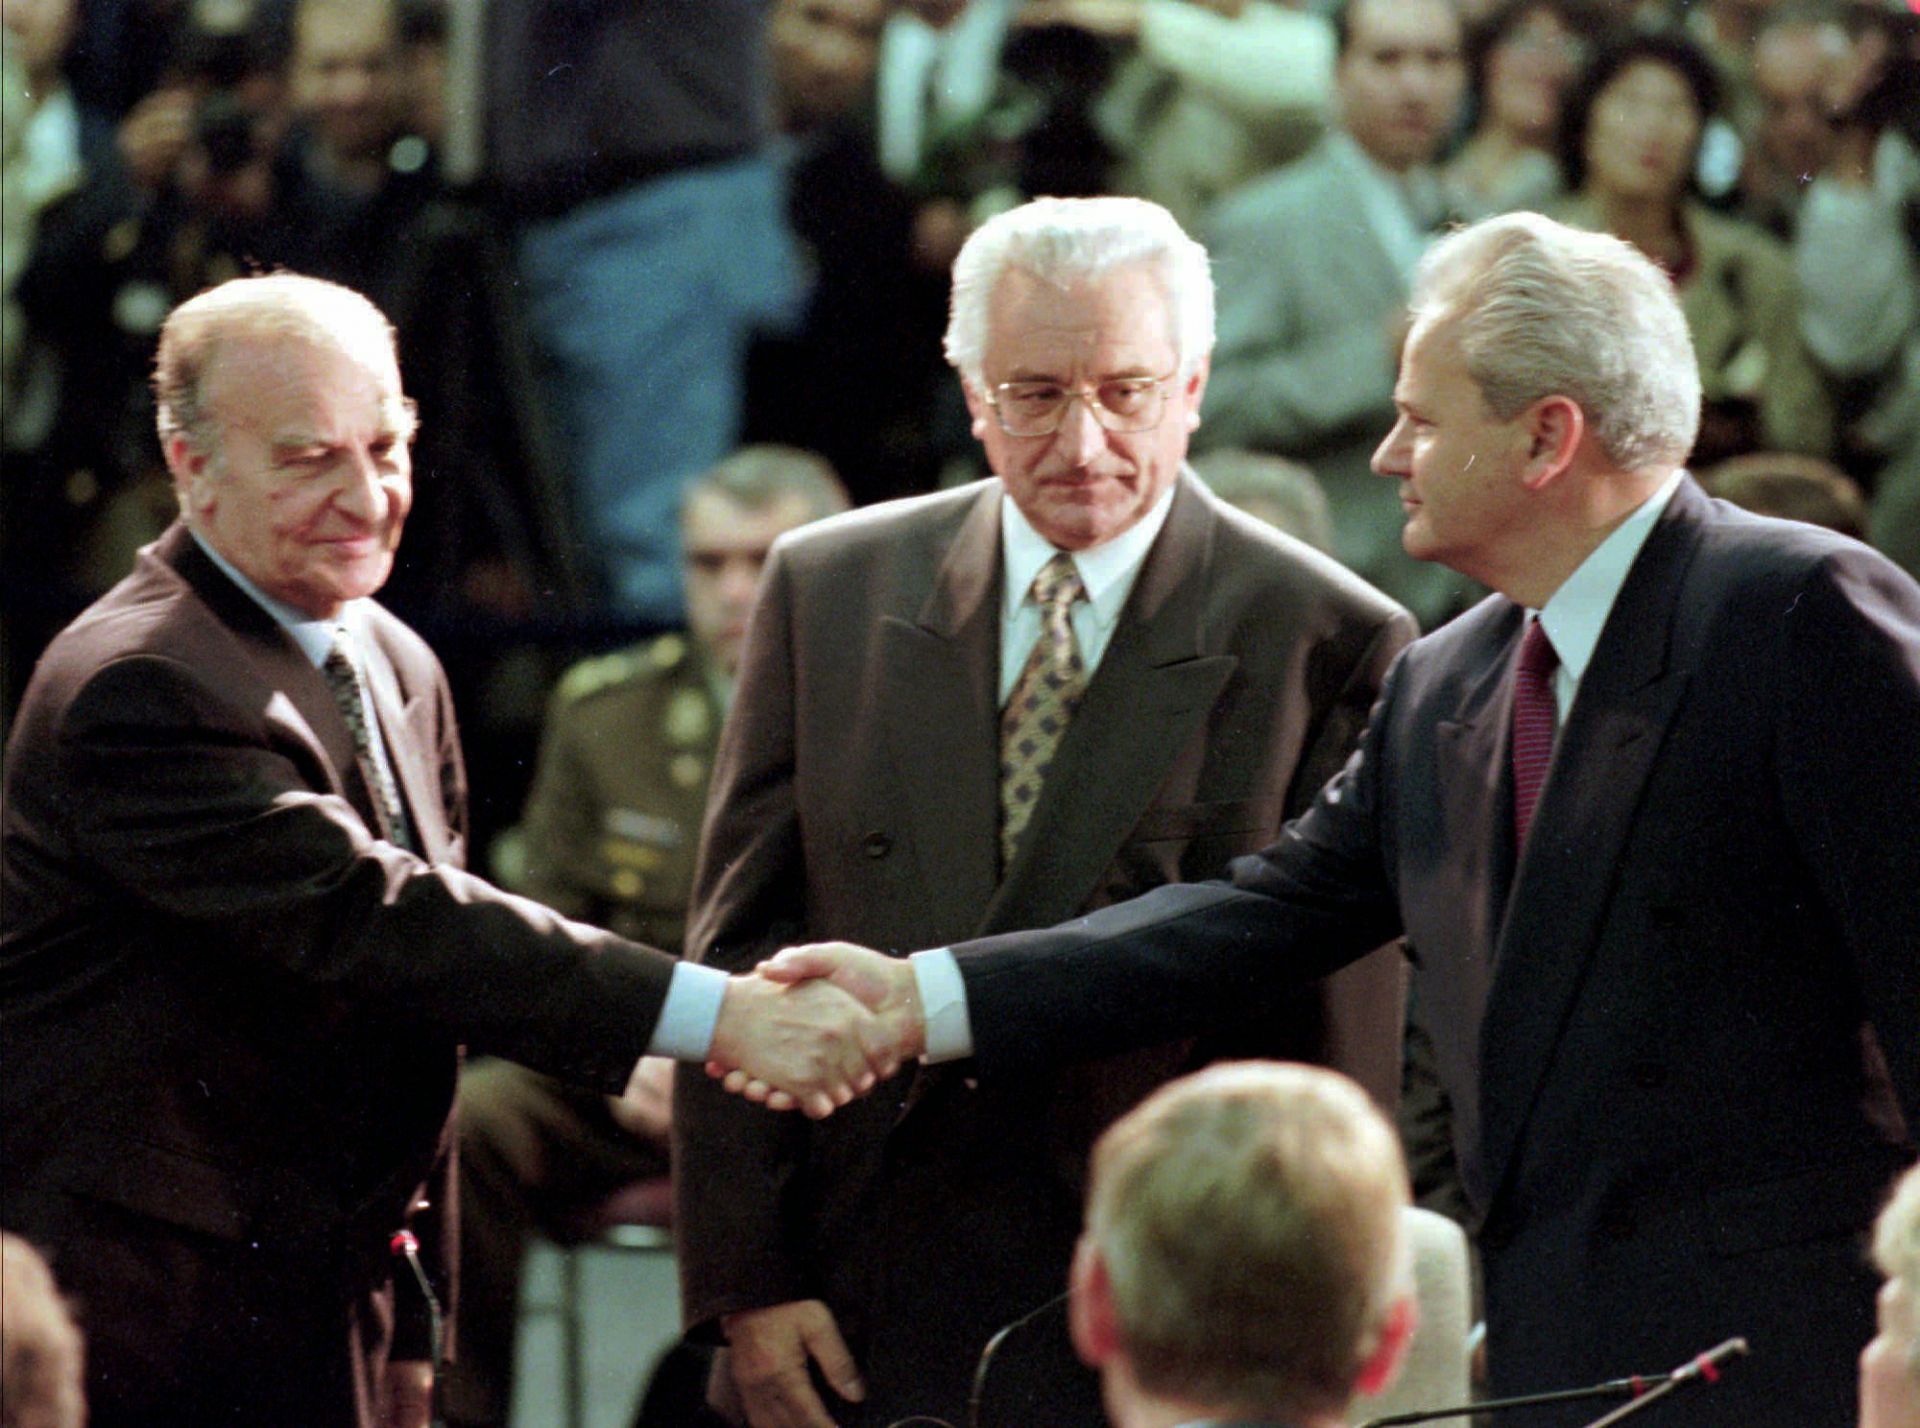  Алия Изетбегович, Франьо Туджман и Слободан Милошевич по време на мирните договаряния в Дейтън, Охайо, Съединени американски щати, на 1 ноември 1995 година 